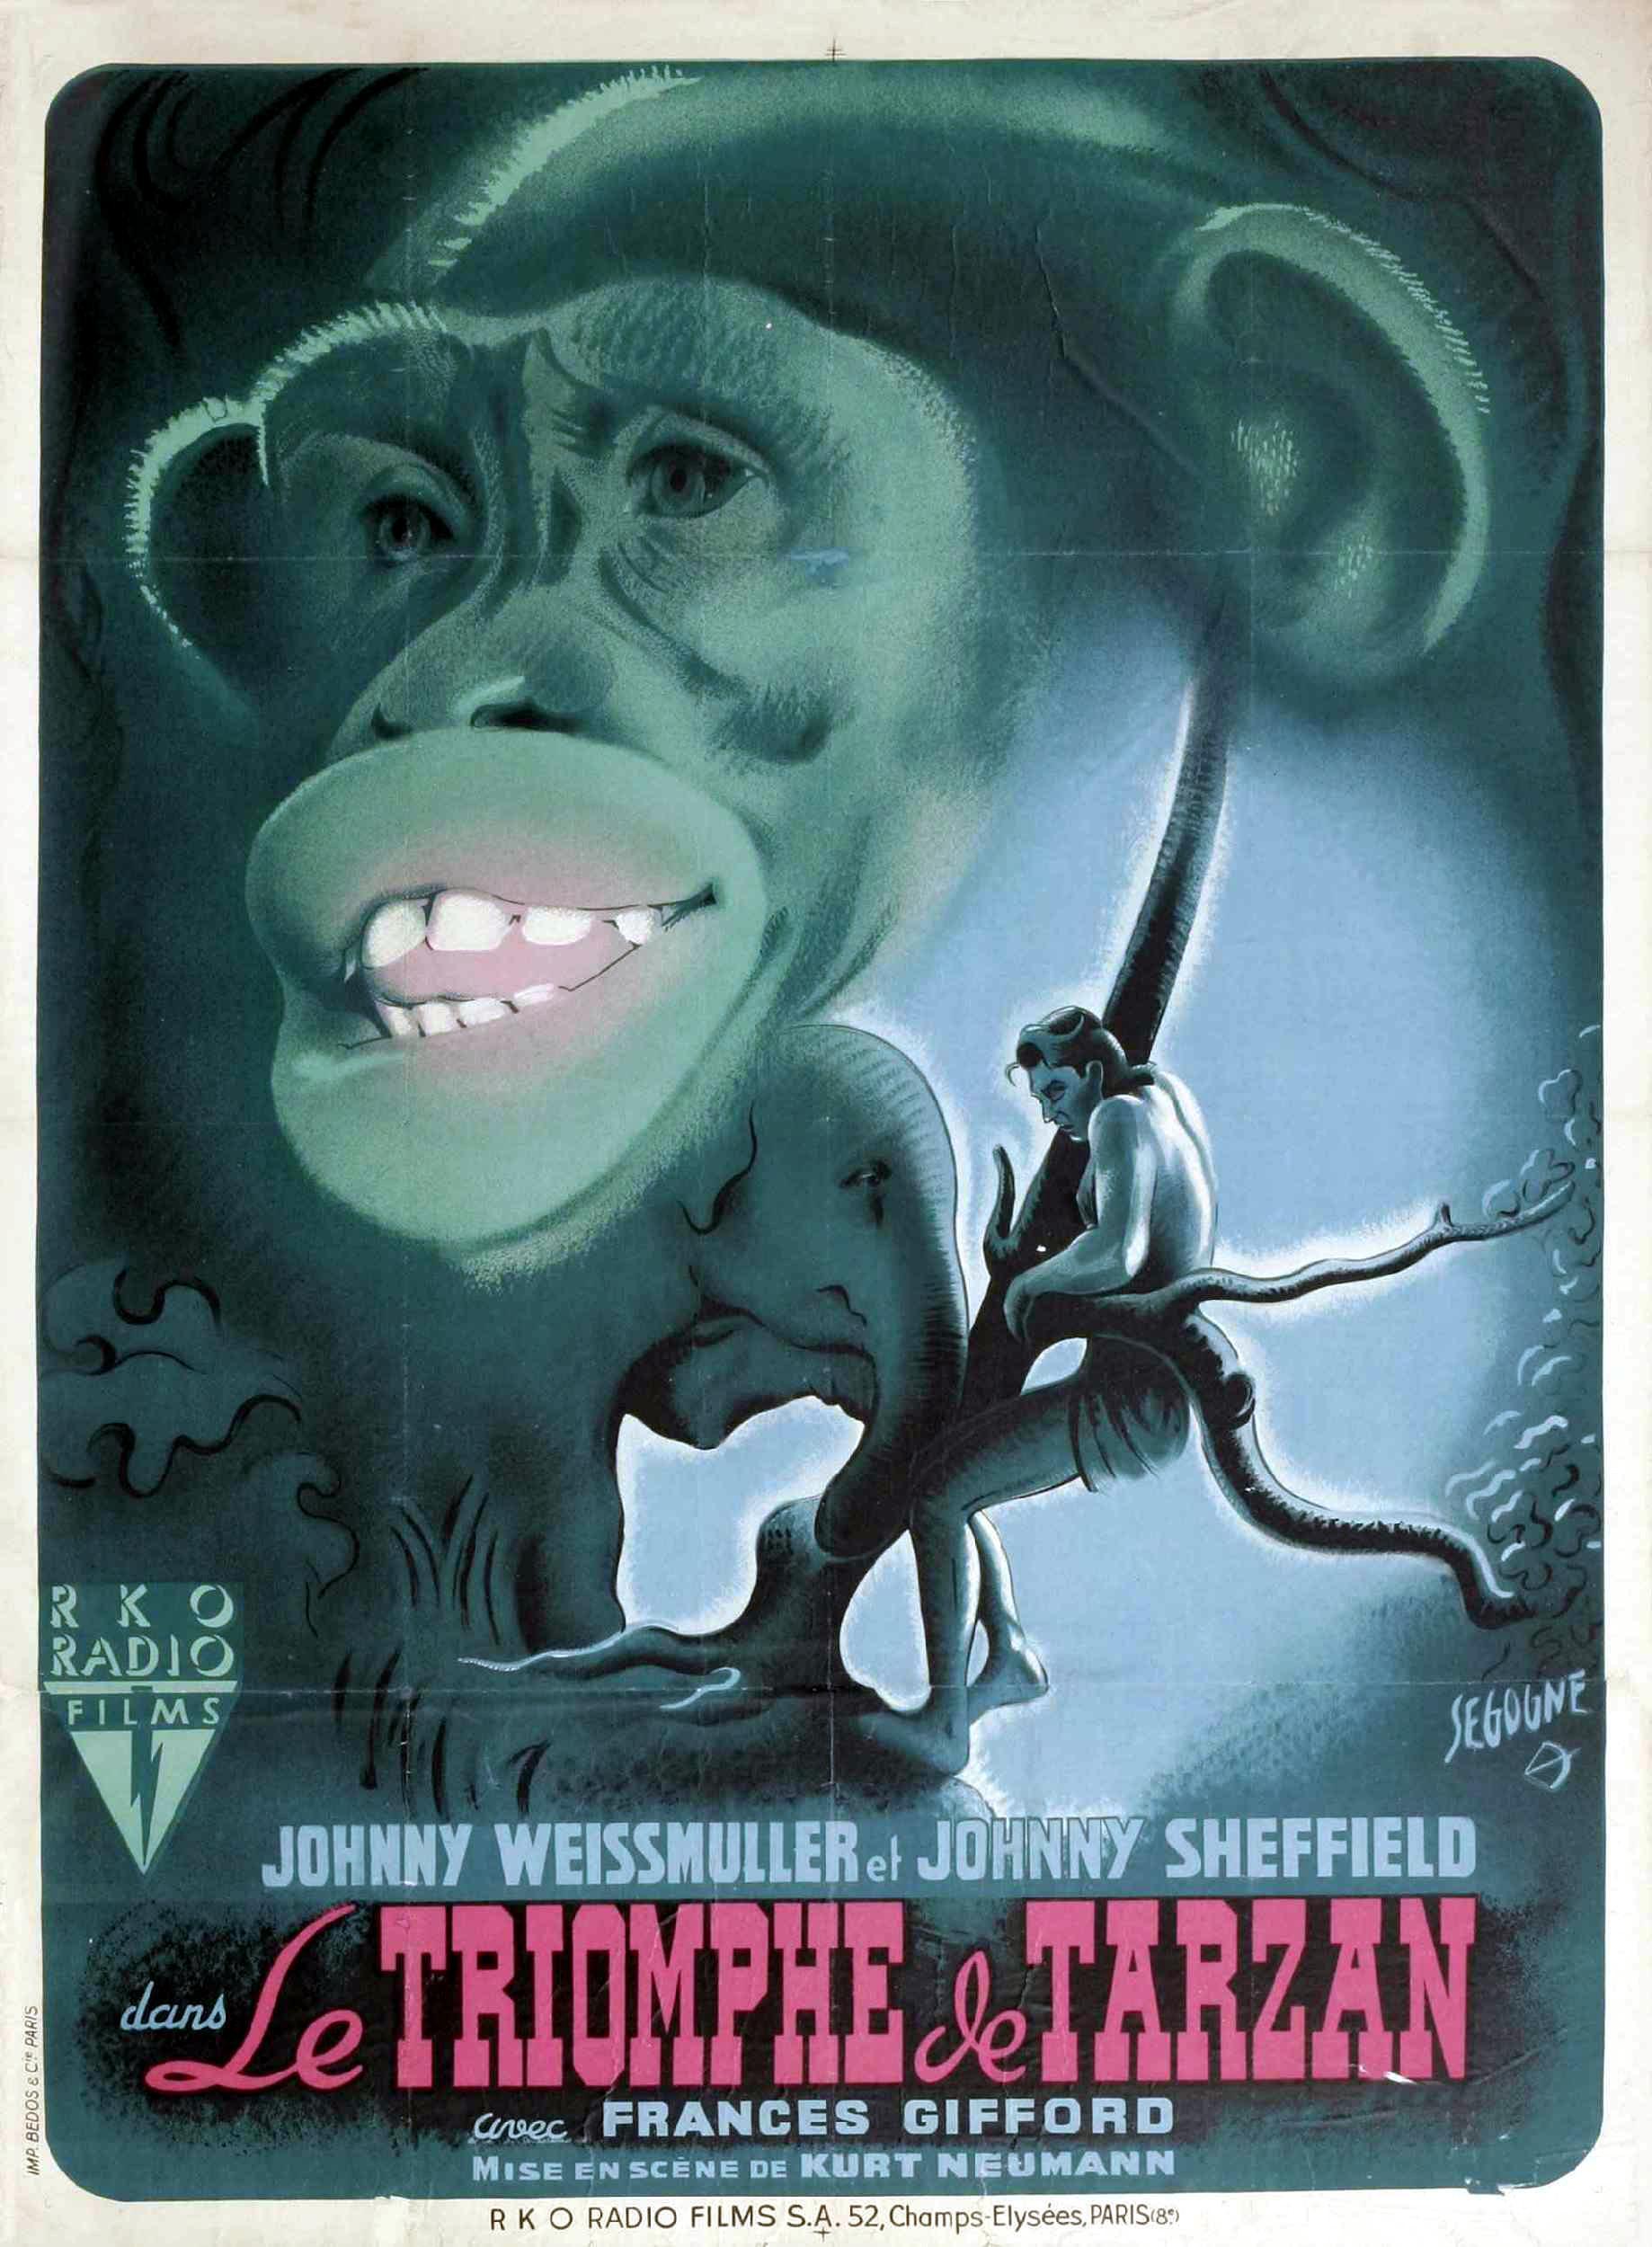 Постер фильма Tarzan Triumphs